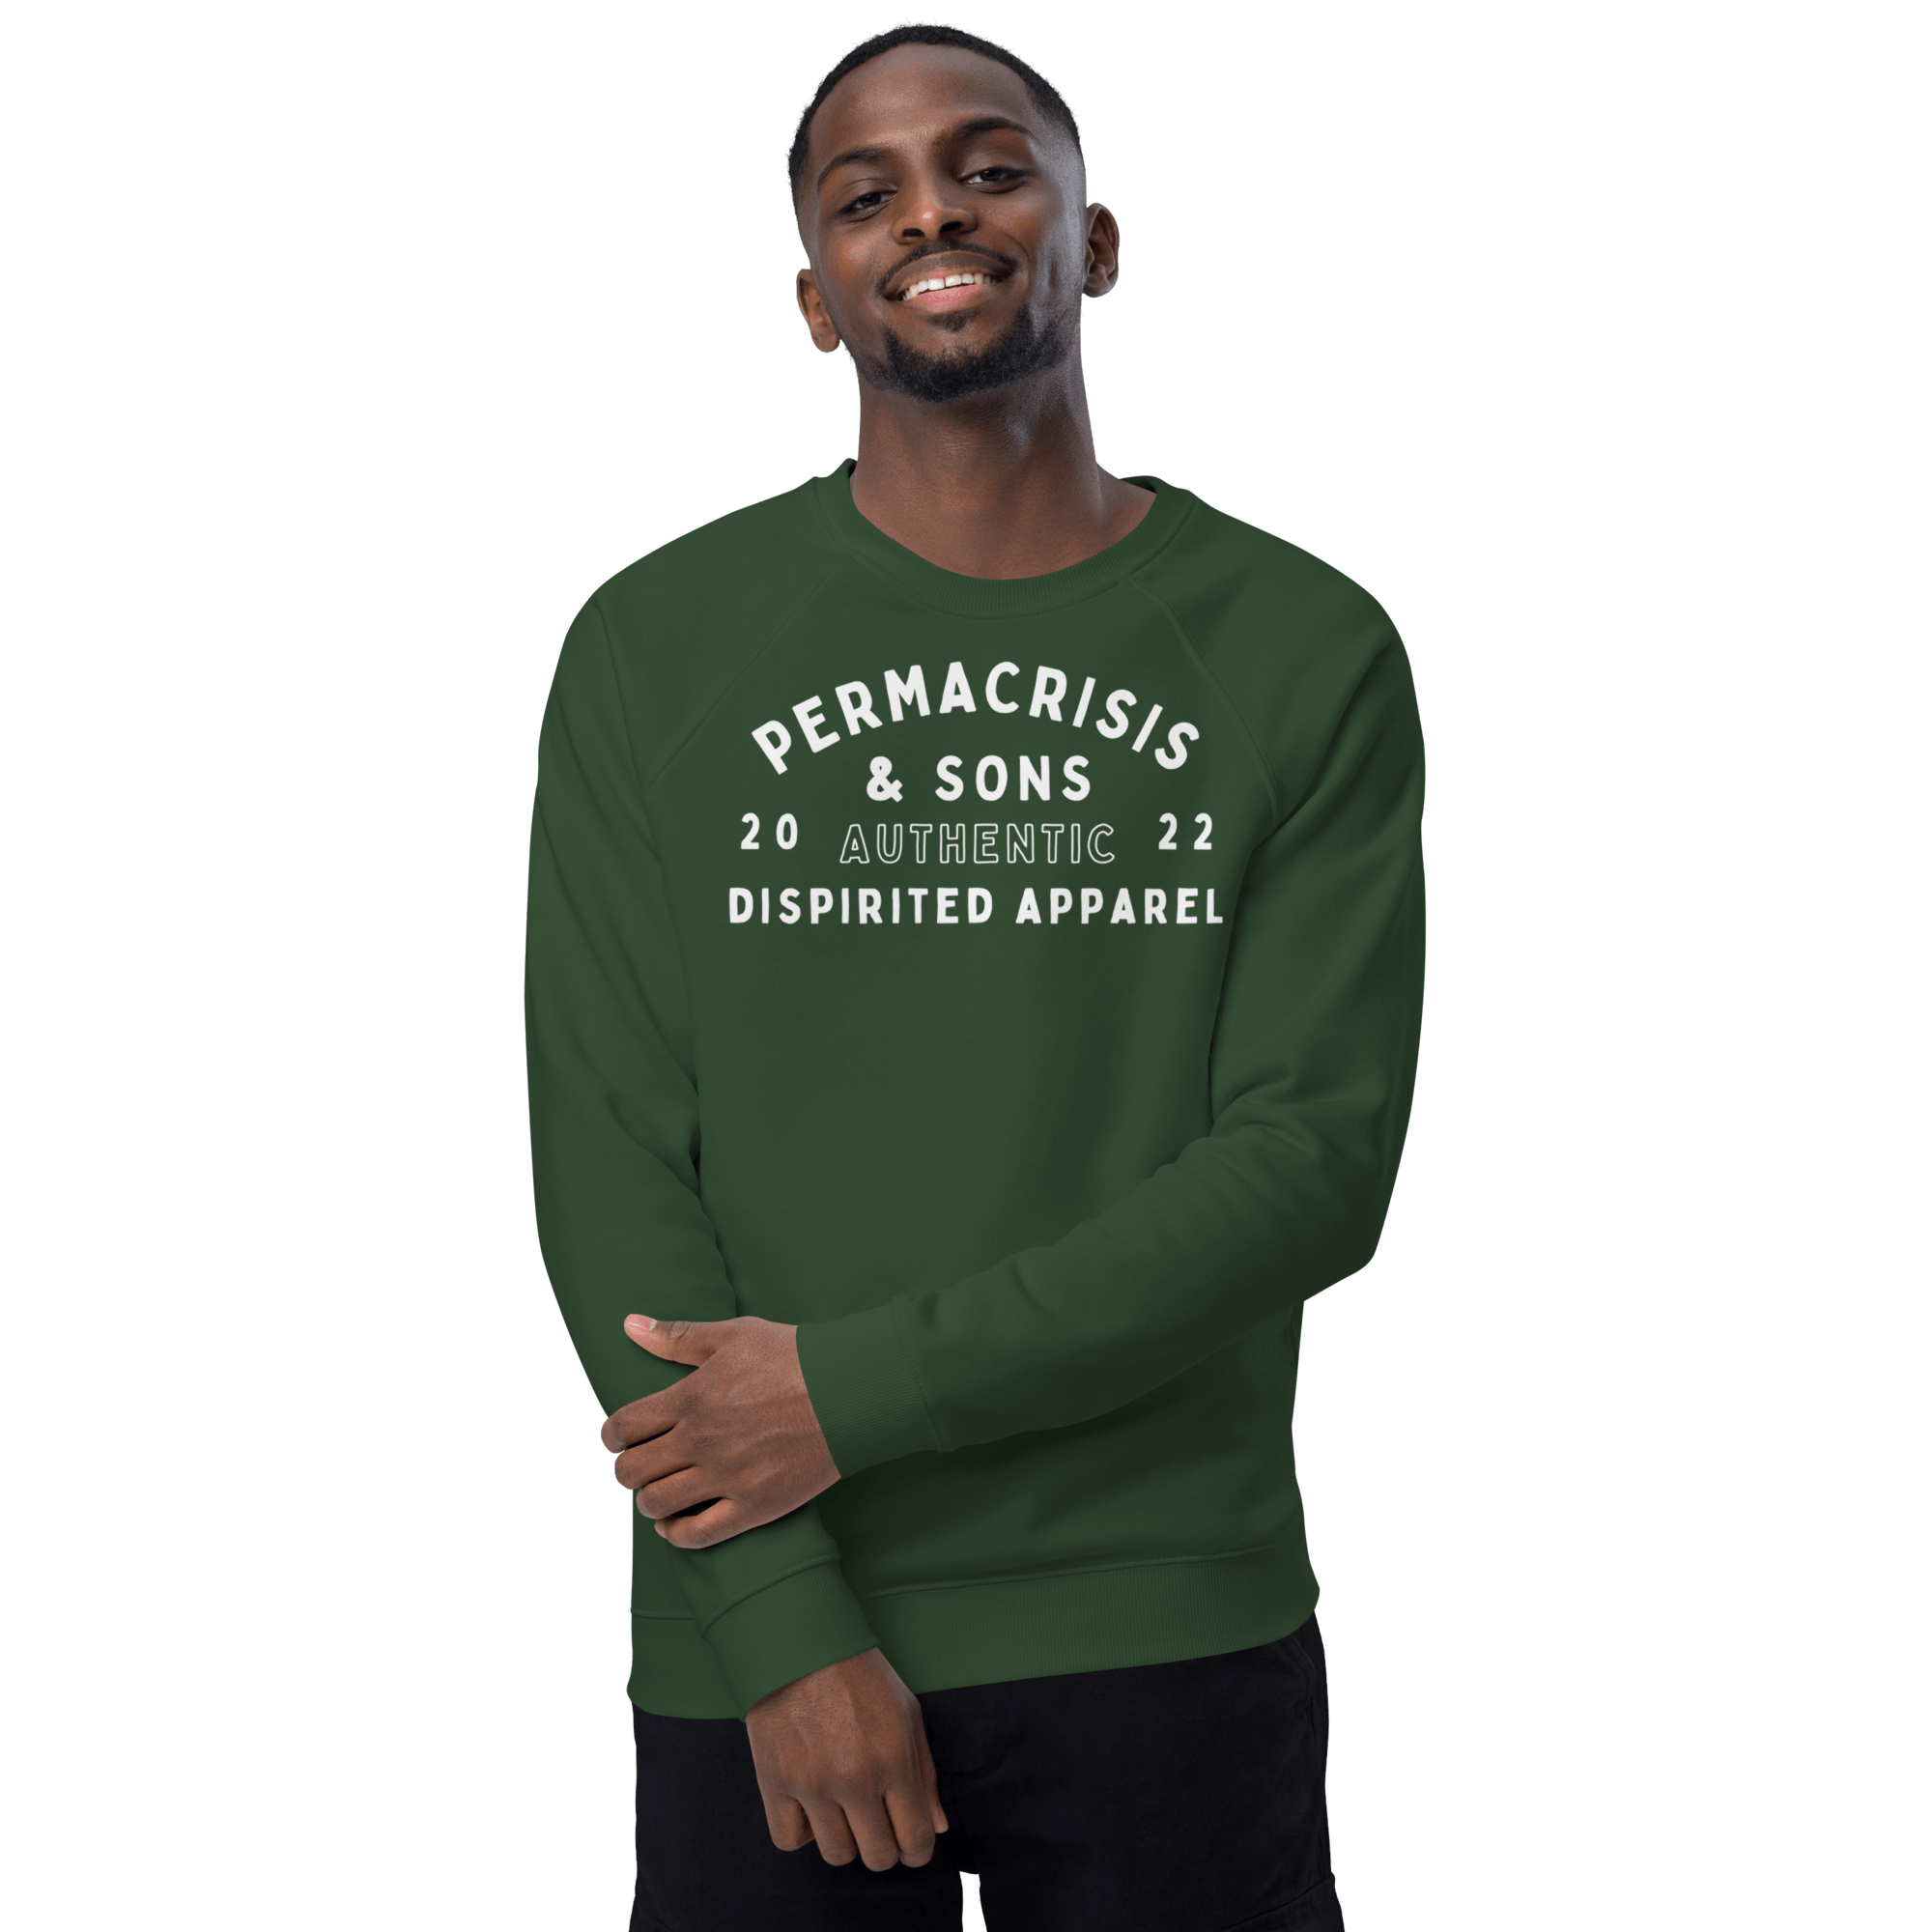 Permacrisis & Sons Organic Raglan Sweatshirt Bottle green / XS Jolly & Goode